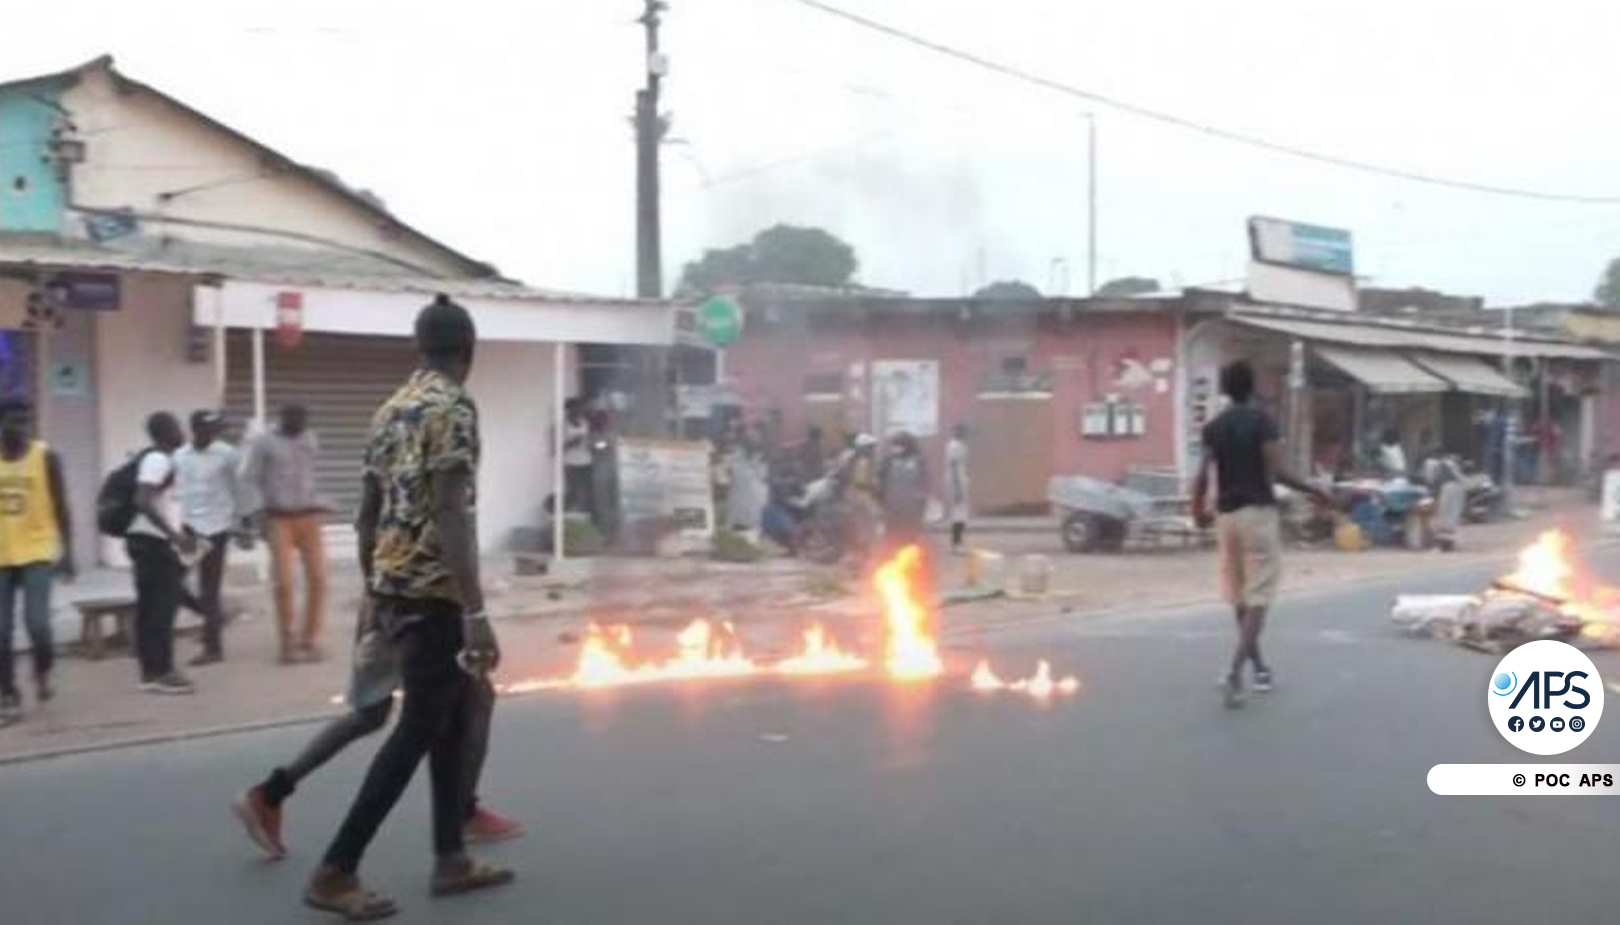 SENEGAL-POLITIQUE-JUSTICE-VIOLENCES / Trois personnes tuées à Ziguinchor lors d’affrontements entre manifestants et forces de l’ordre